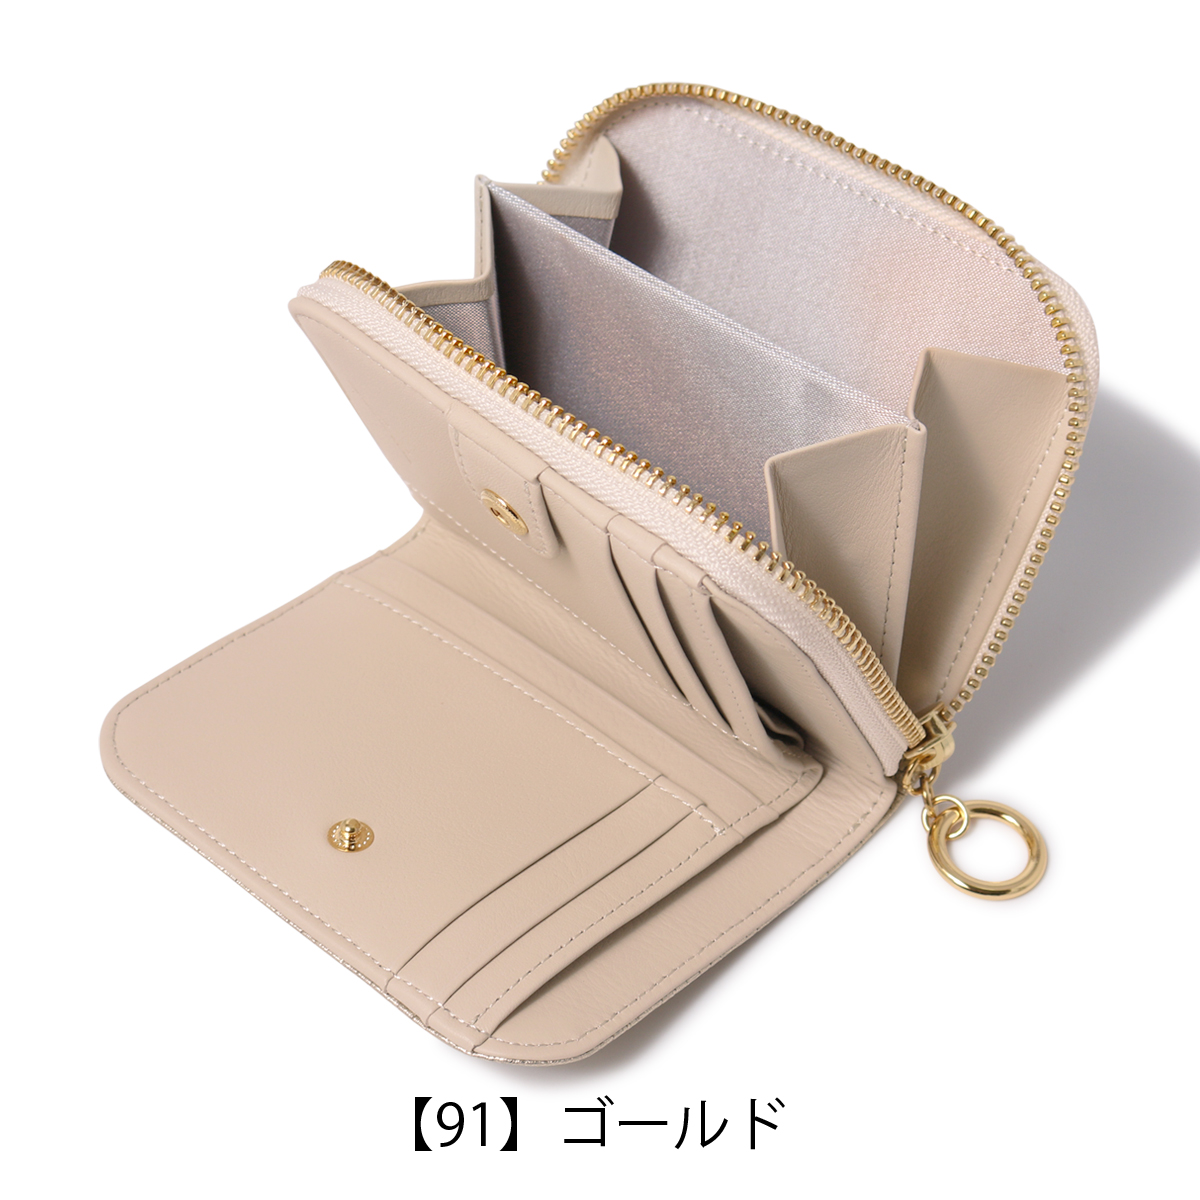 アルカン 二つ折り財布 パネロ レディース 1418-711 日本製 ARUKAN 型 